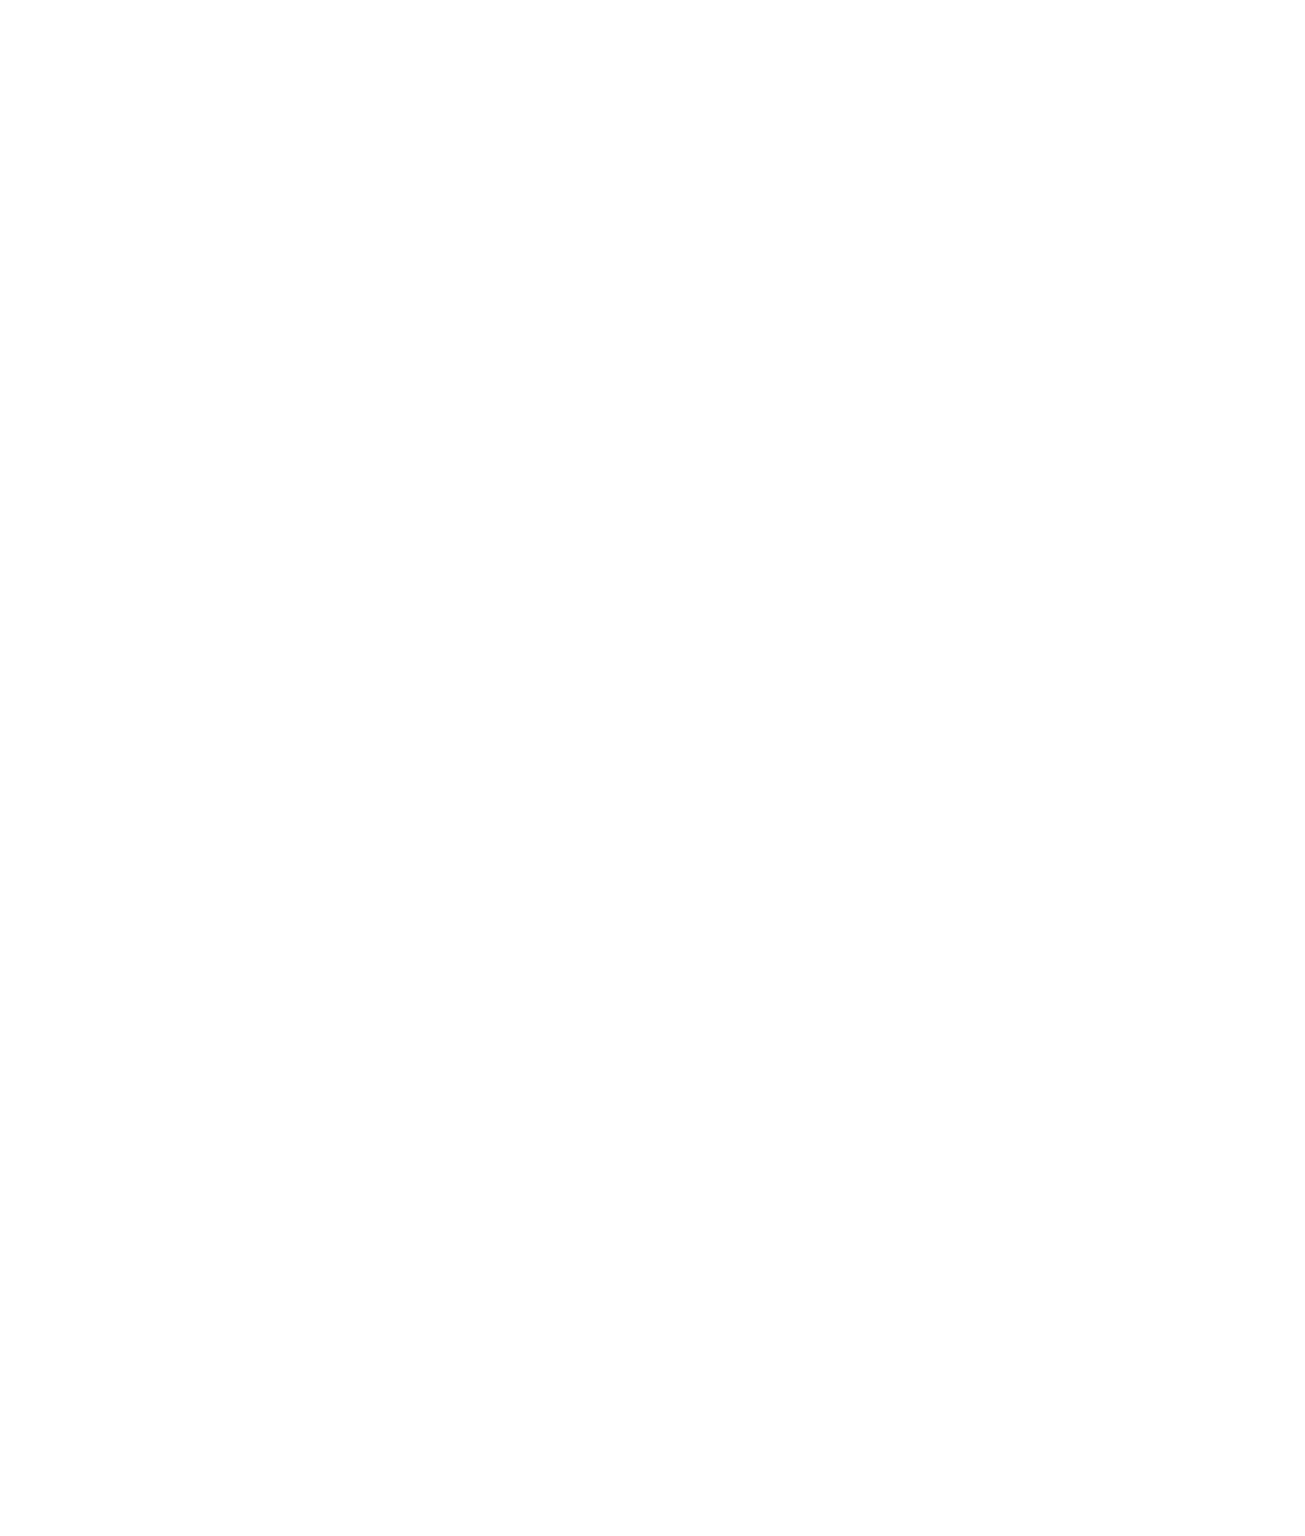 CACI logo pour fonds sombres (PNG transparent)